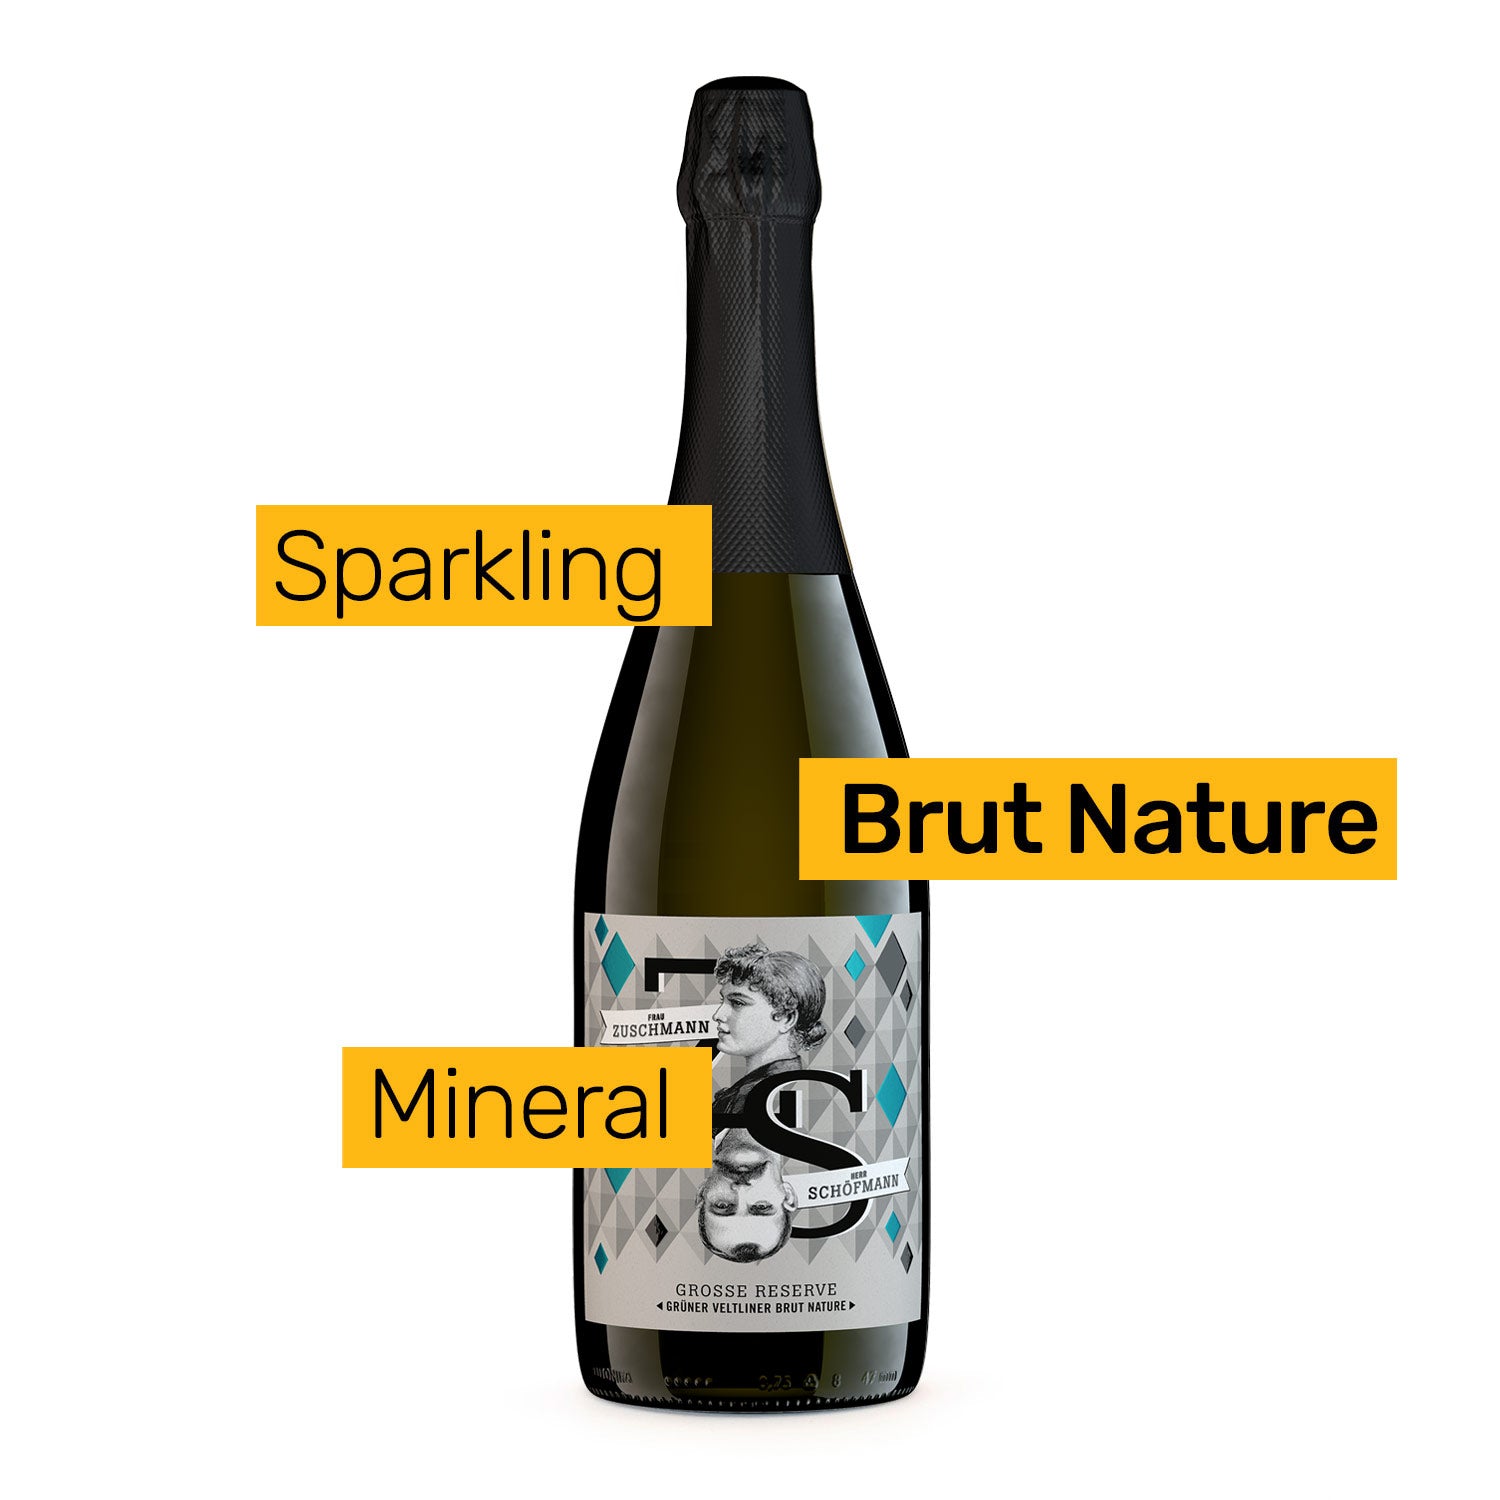 sparkling brut nature wine